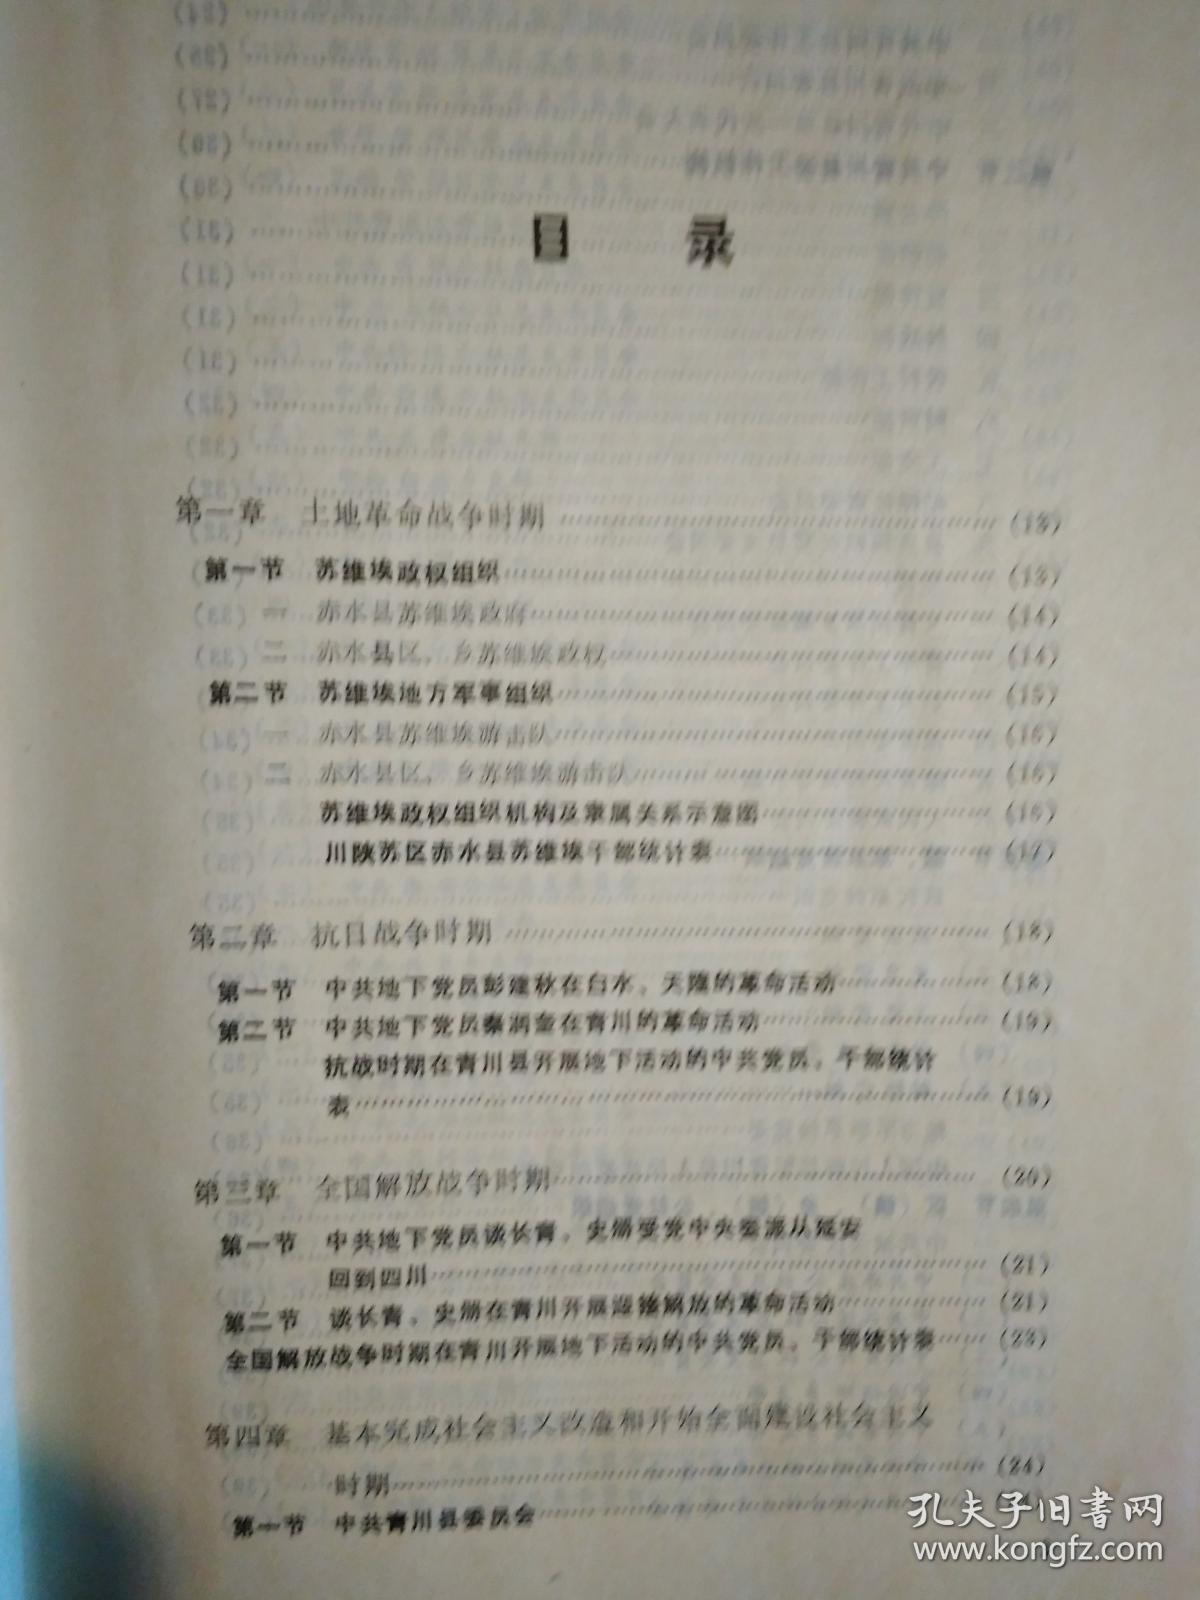 中国共产党四川省青川县组织史资料(1939-1987)1992年1版1印.精装16开